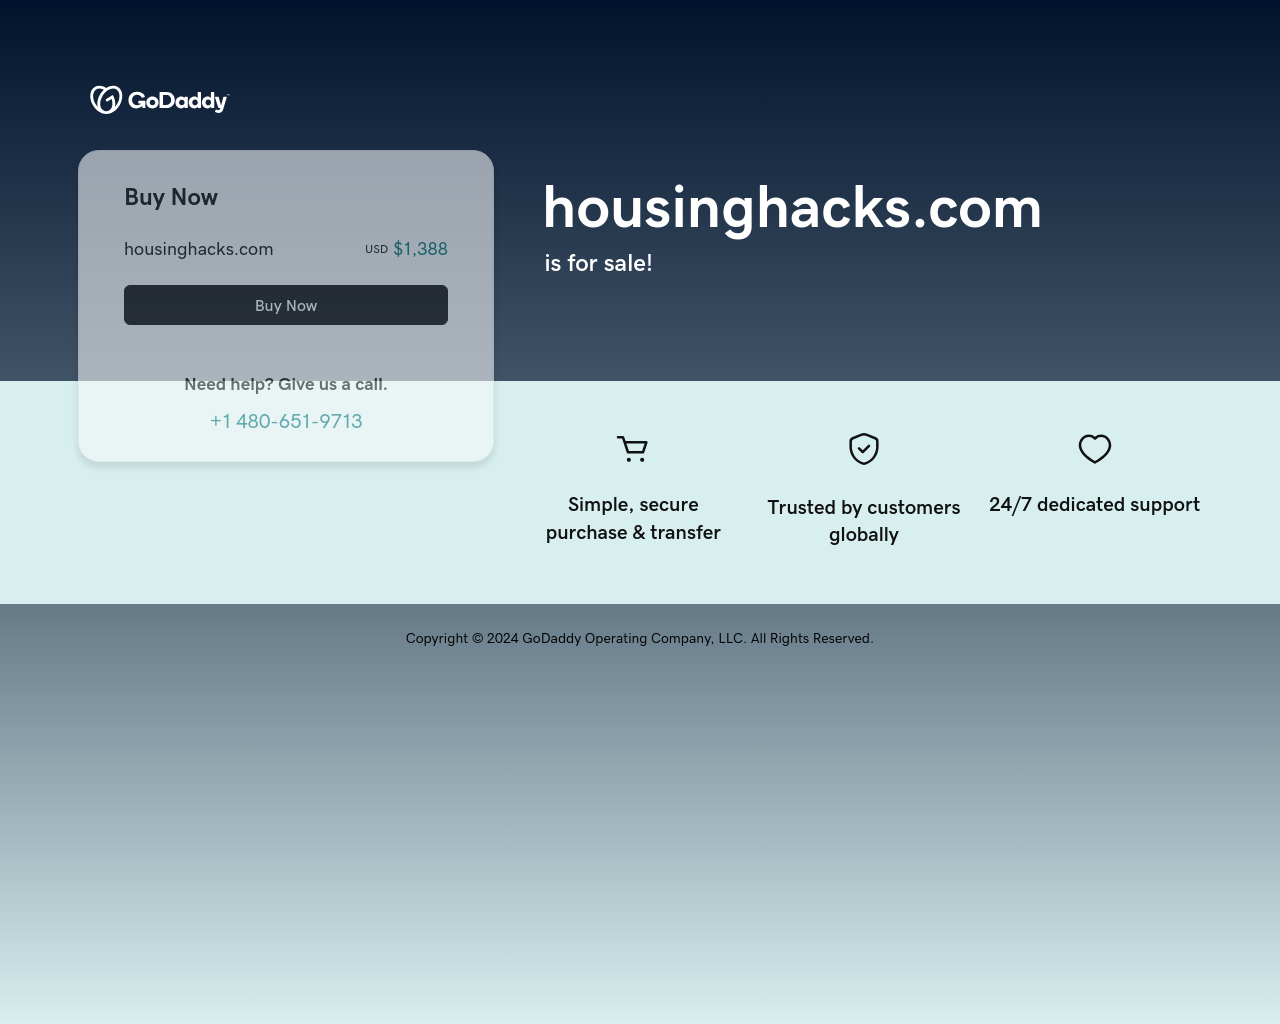 housinghacks.com